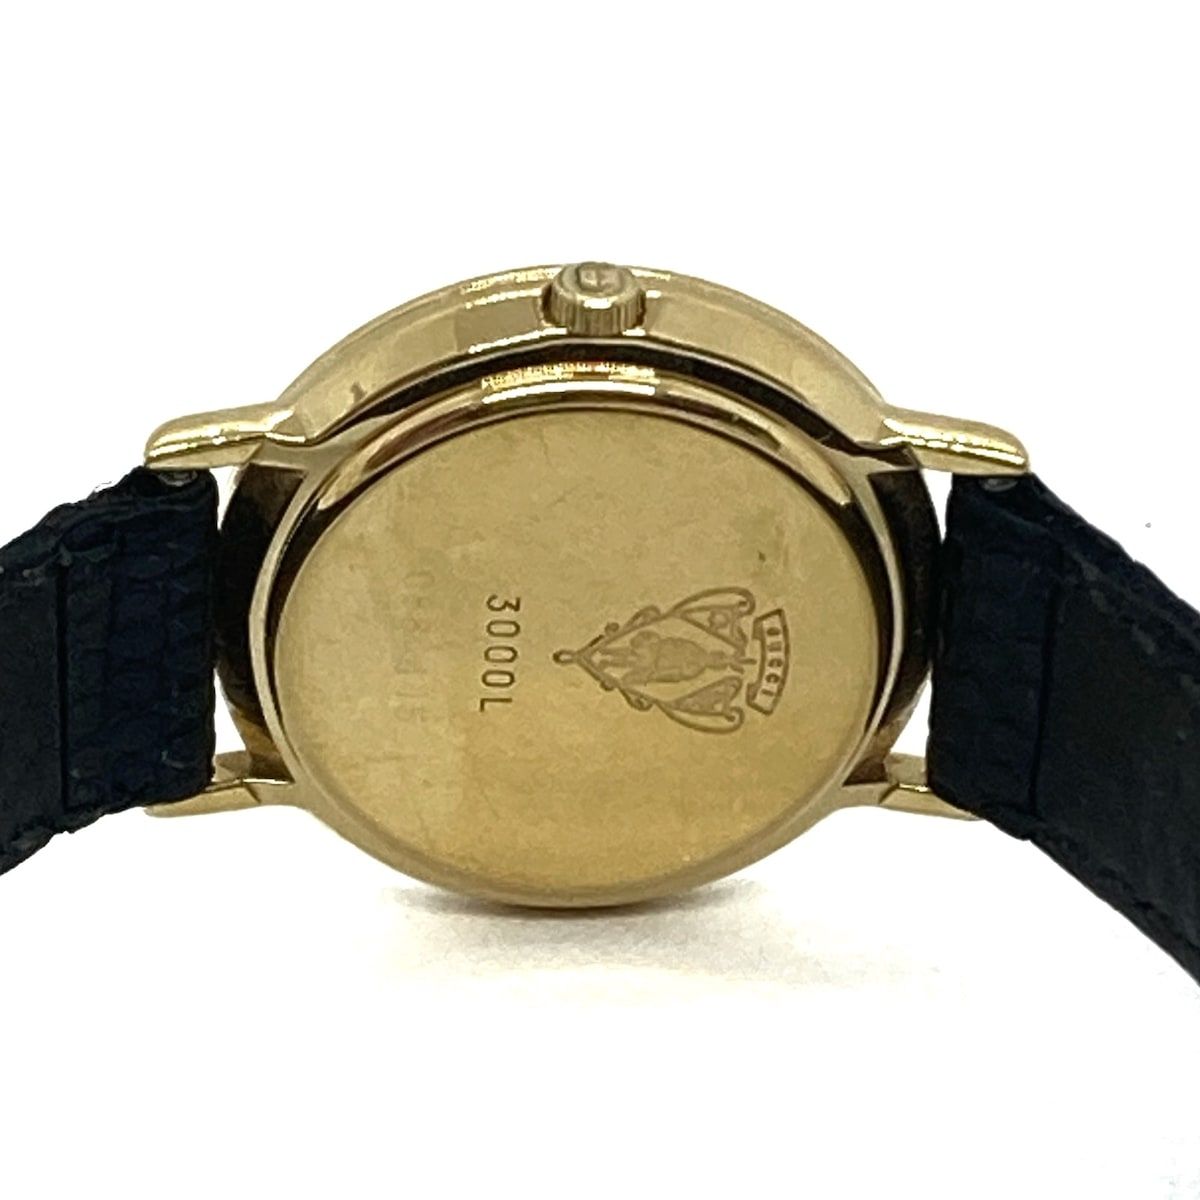 GUCCI(グッチ) 腕時計 - 3000L レディース 革ベルト 黒 - メルカリ